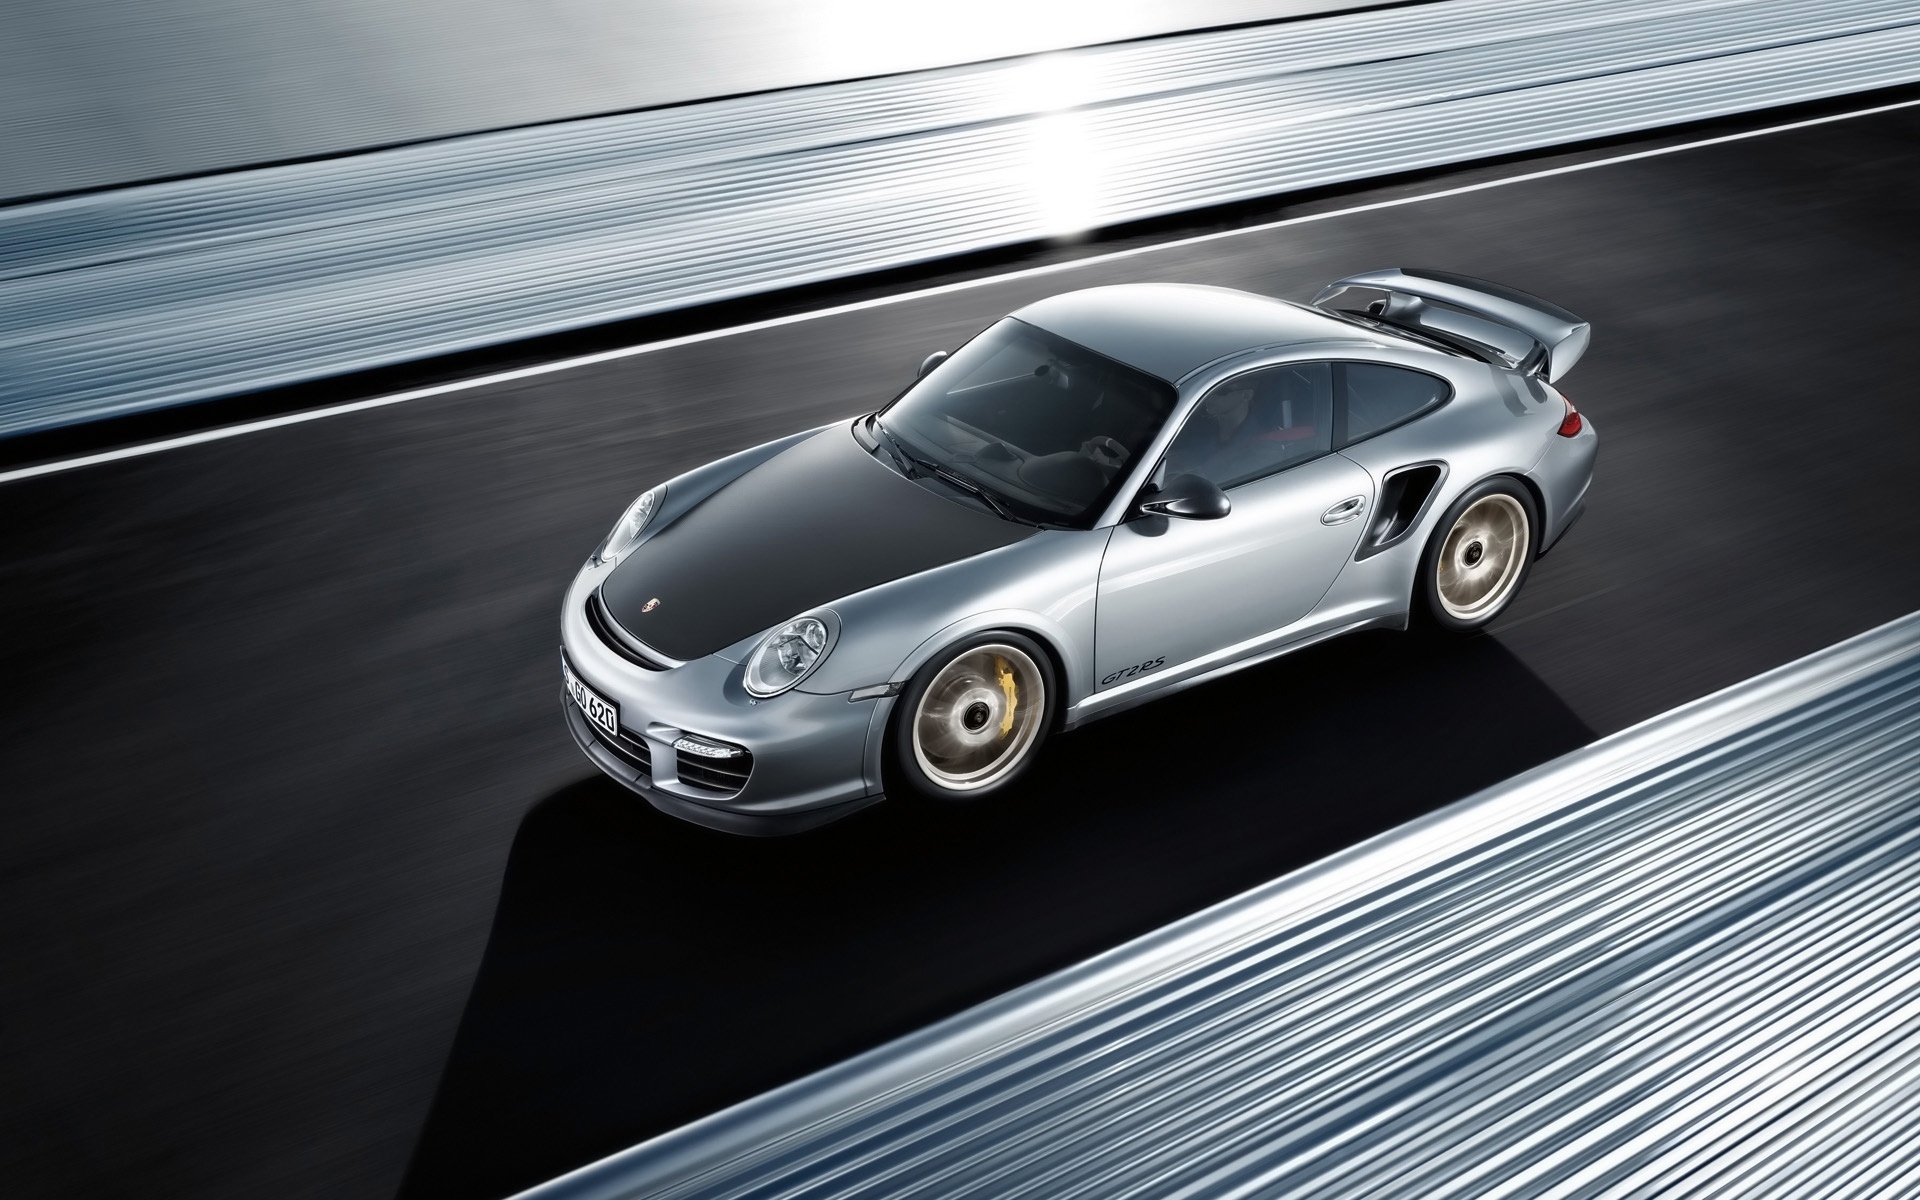 Porsche 911 GT2 RS 2011 for 1920 x 1200 widescreen resolution